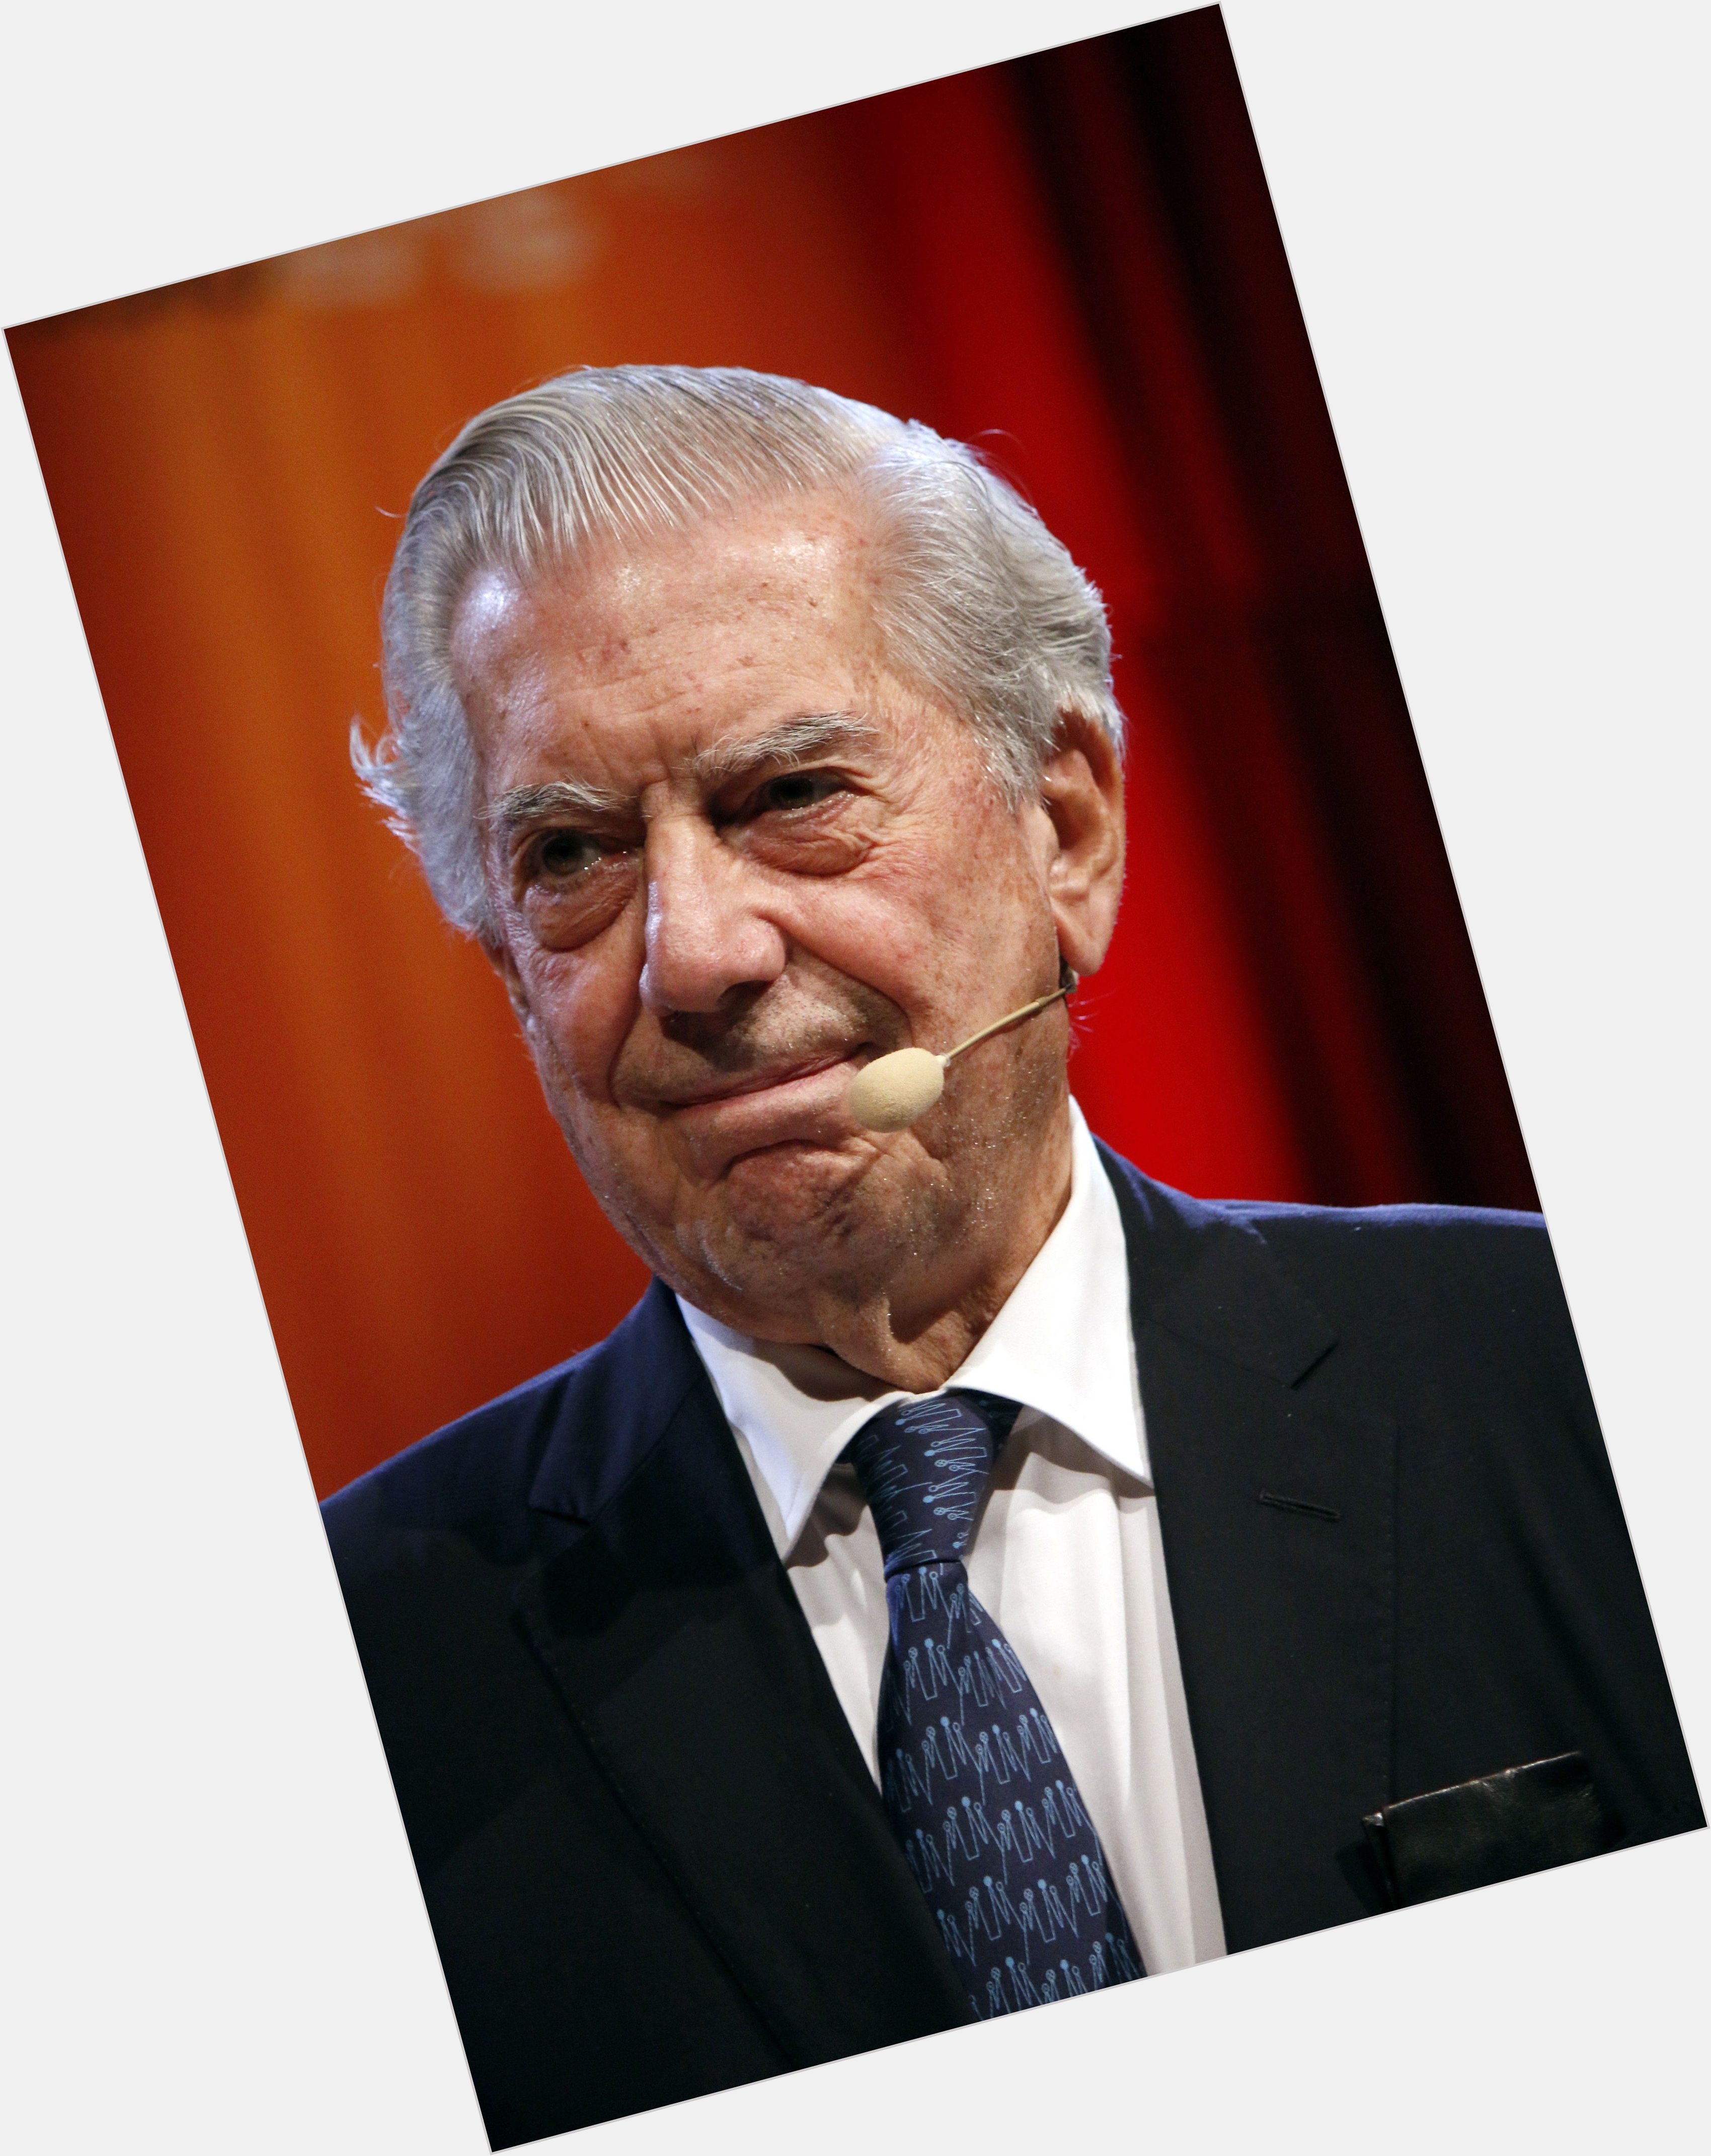 <a href="/hot-men/mario-vargas-llosa/where-dating-news-photos">Mario Vargas Llosa</a>  